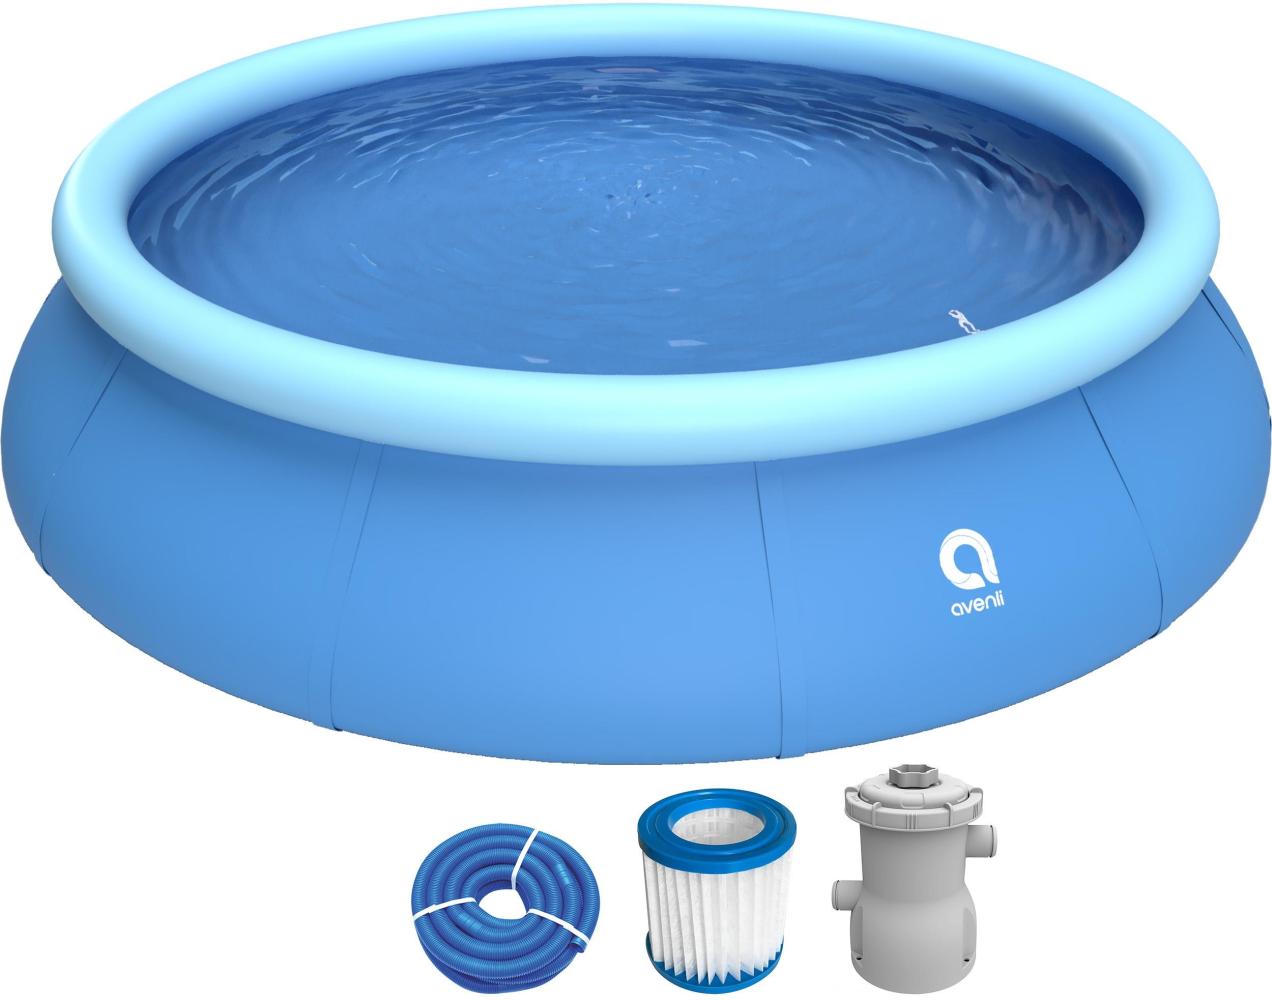 Avenli Prompt Set 360 x 76 cm Pool Set, mit Filterpumpe, blau Bild 1